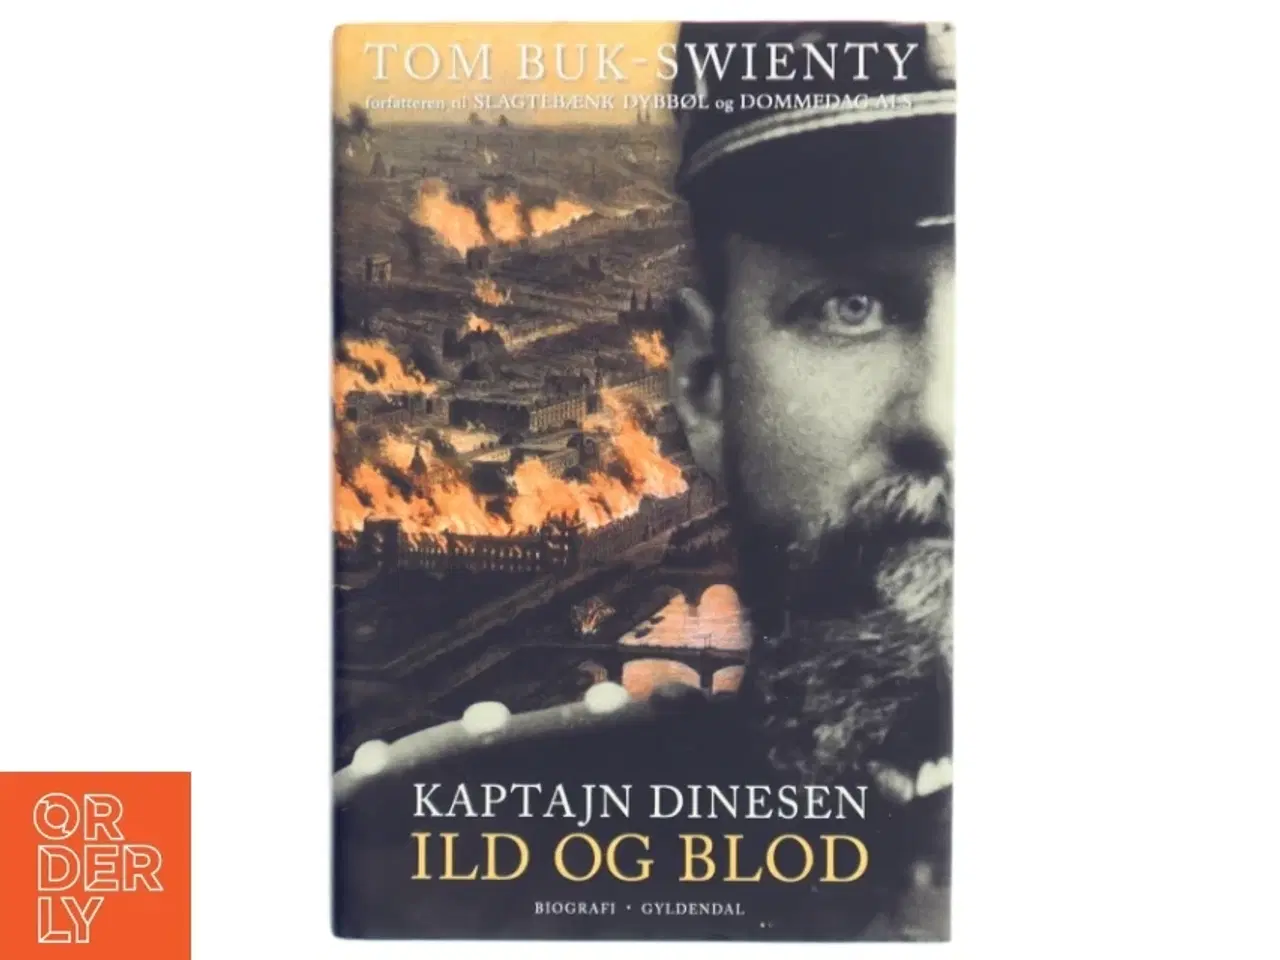 Billede 1 - Kaptajn Dinesen. Bind 1, Ild og blod af Tom Buk-Swienty (Bog)